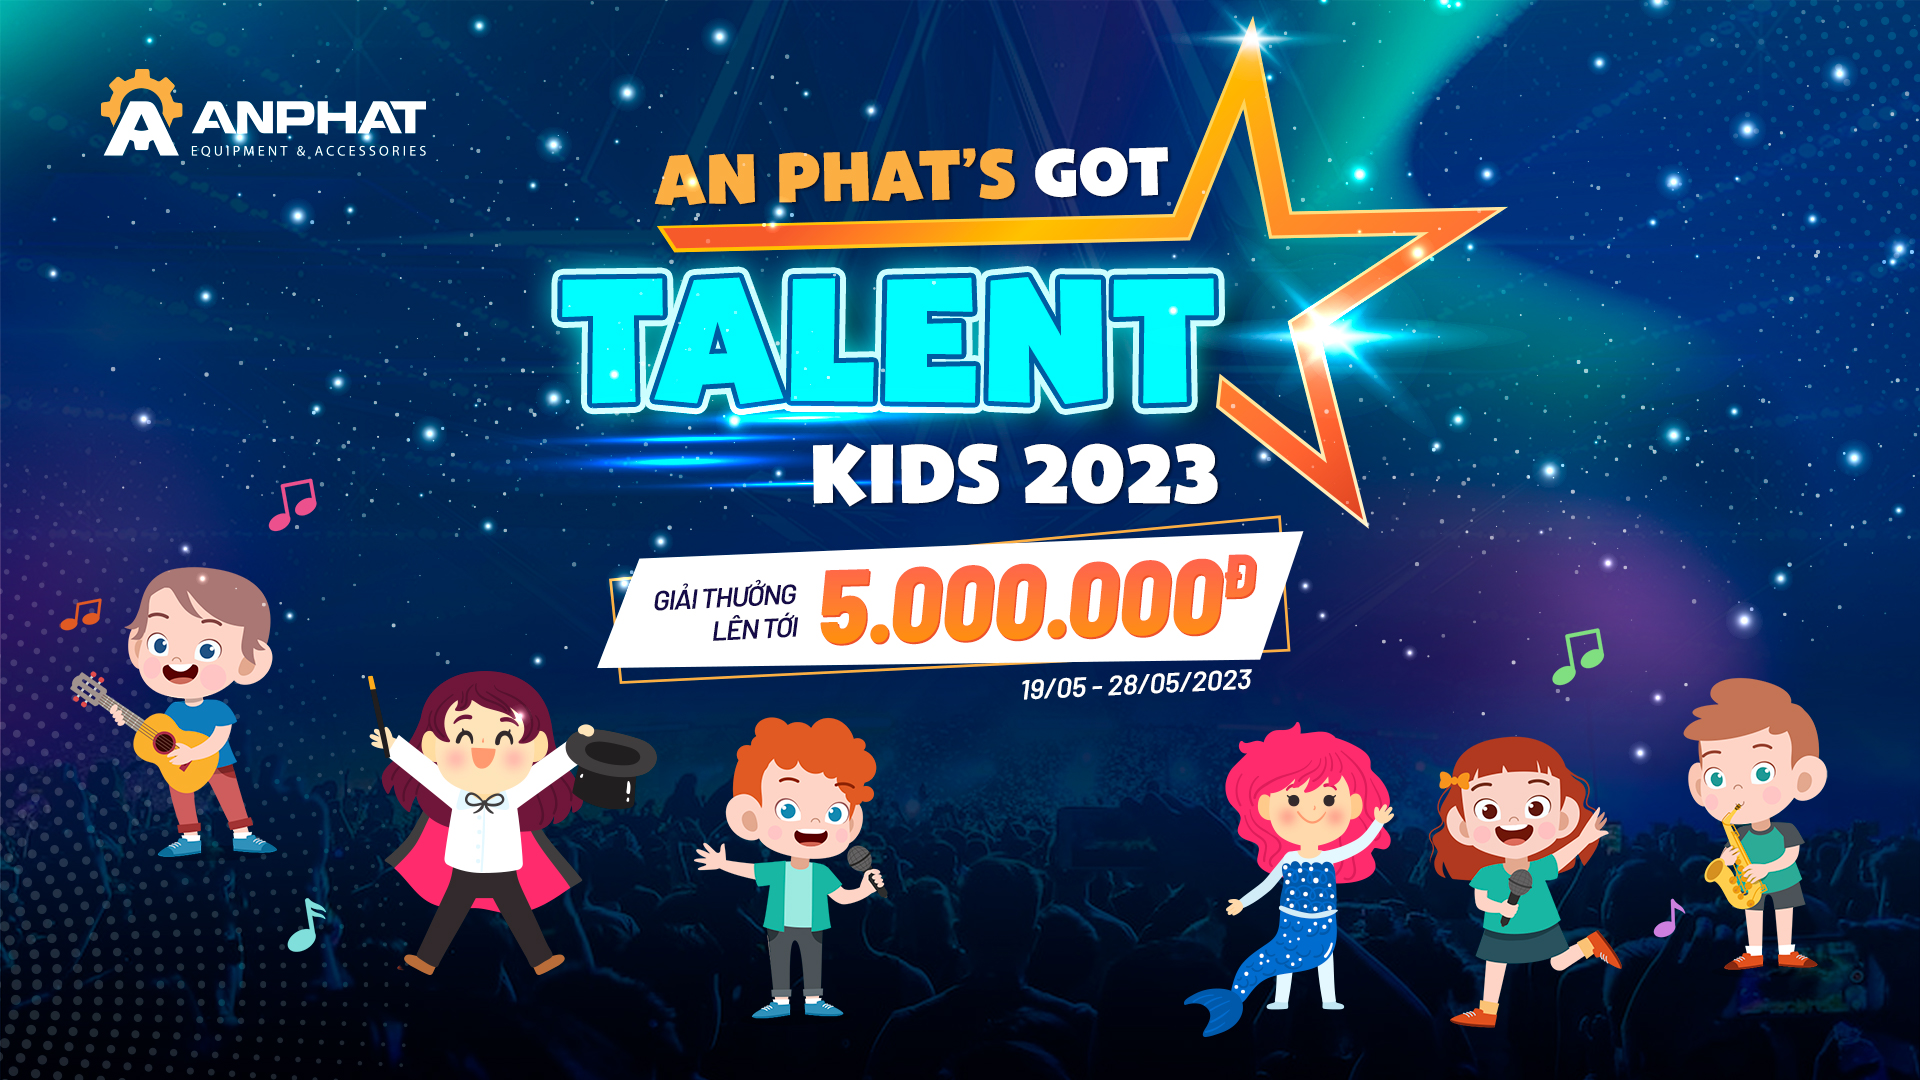 An Phat’s Got Talent Kids 2023 - Tìm kiếm tài năng nhí An Phát